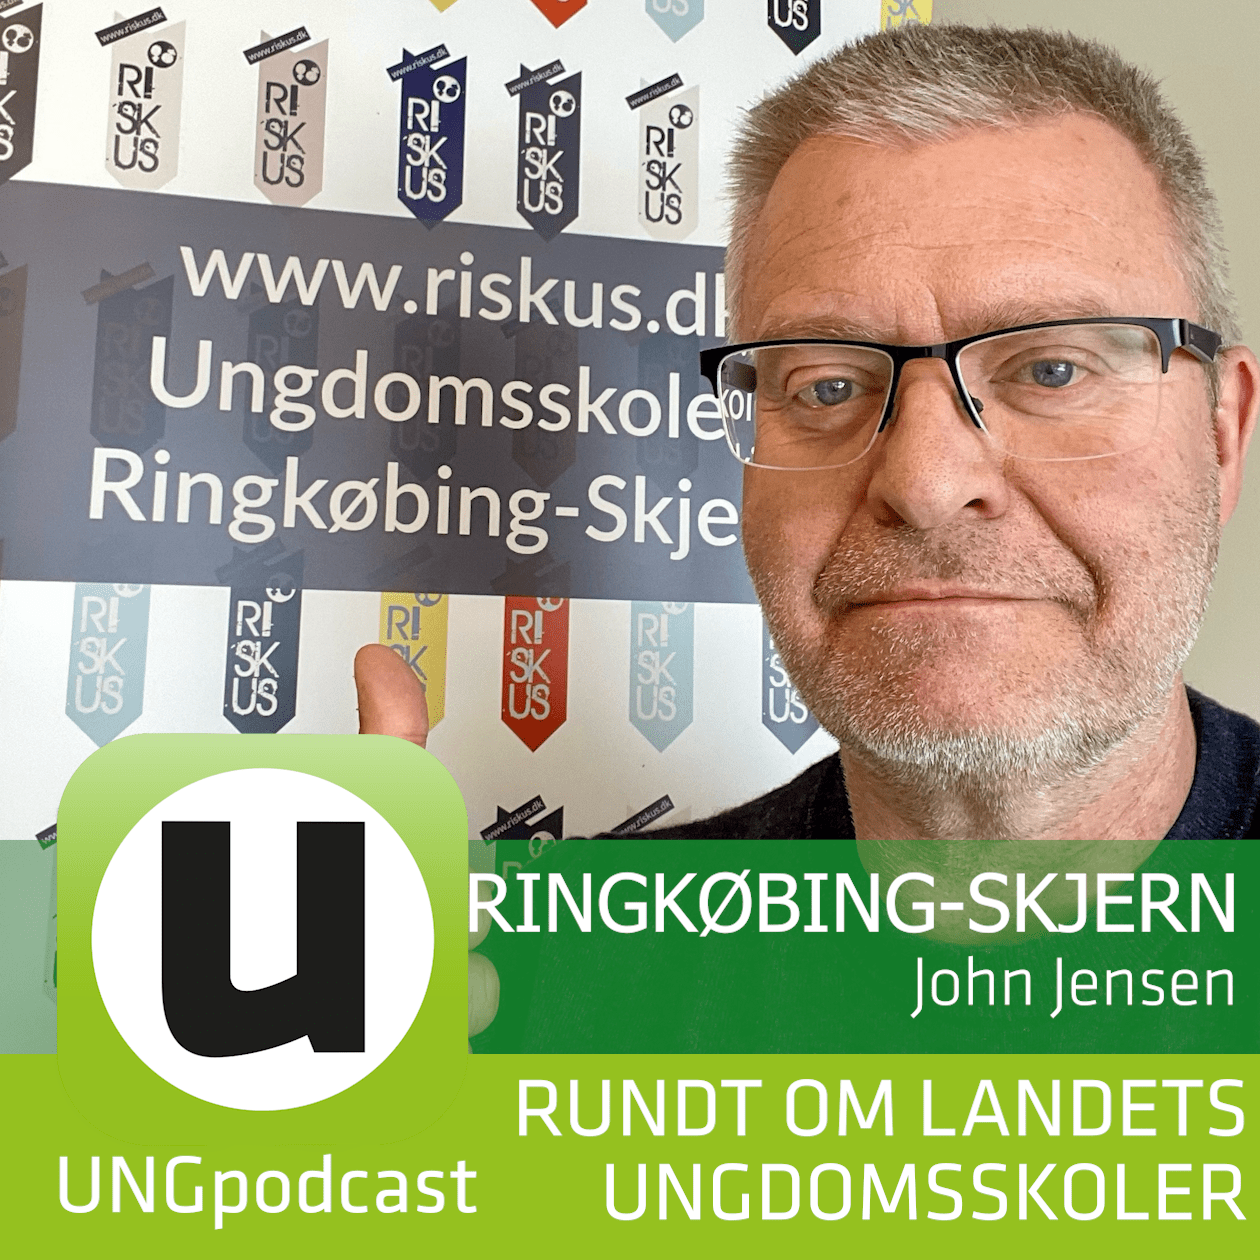 Podcast ikon #010 Ringkøbing-Skjern John Jensen